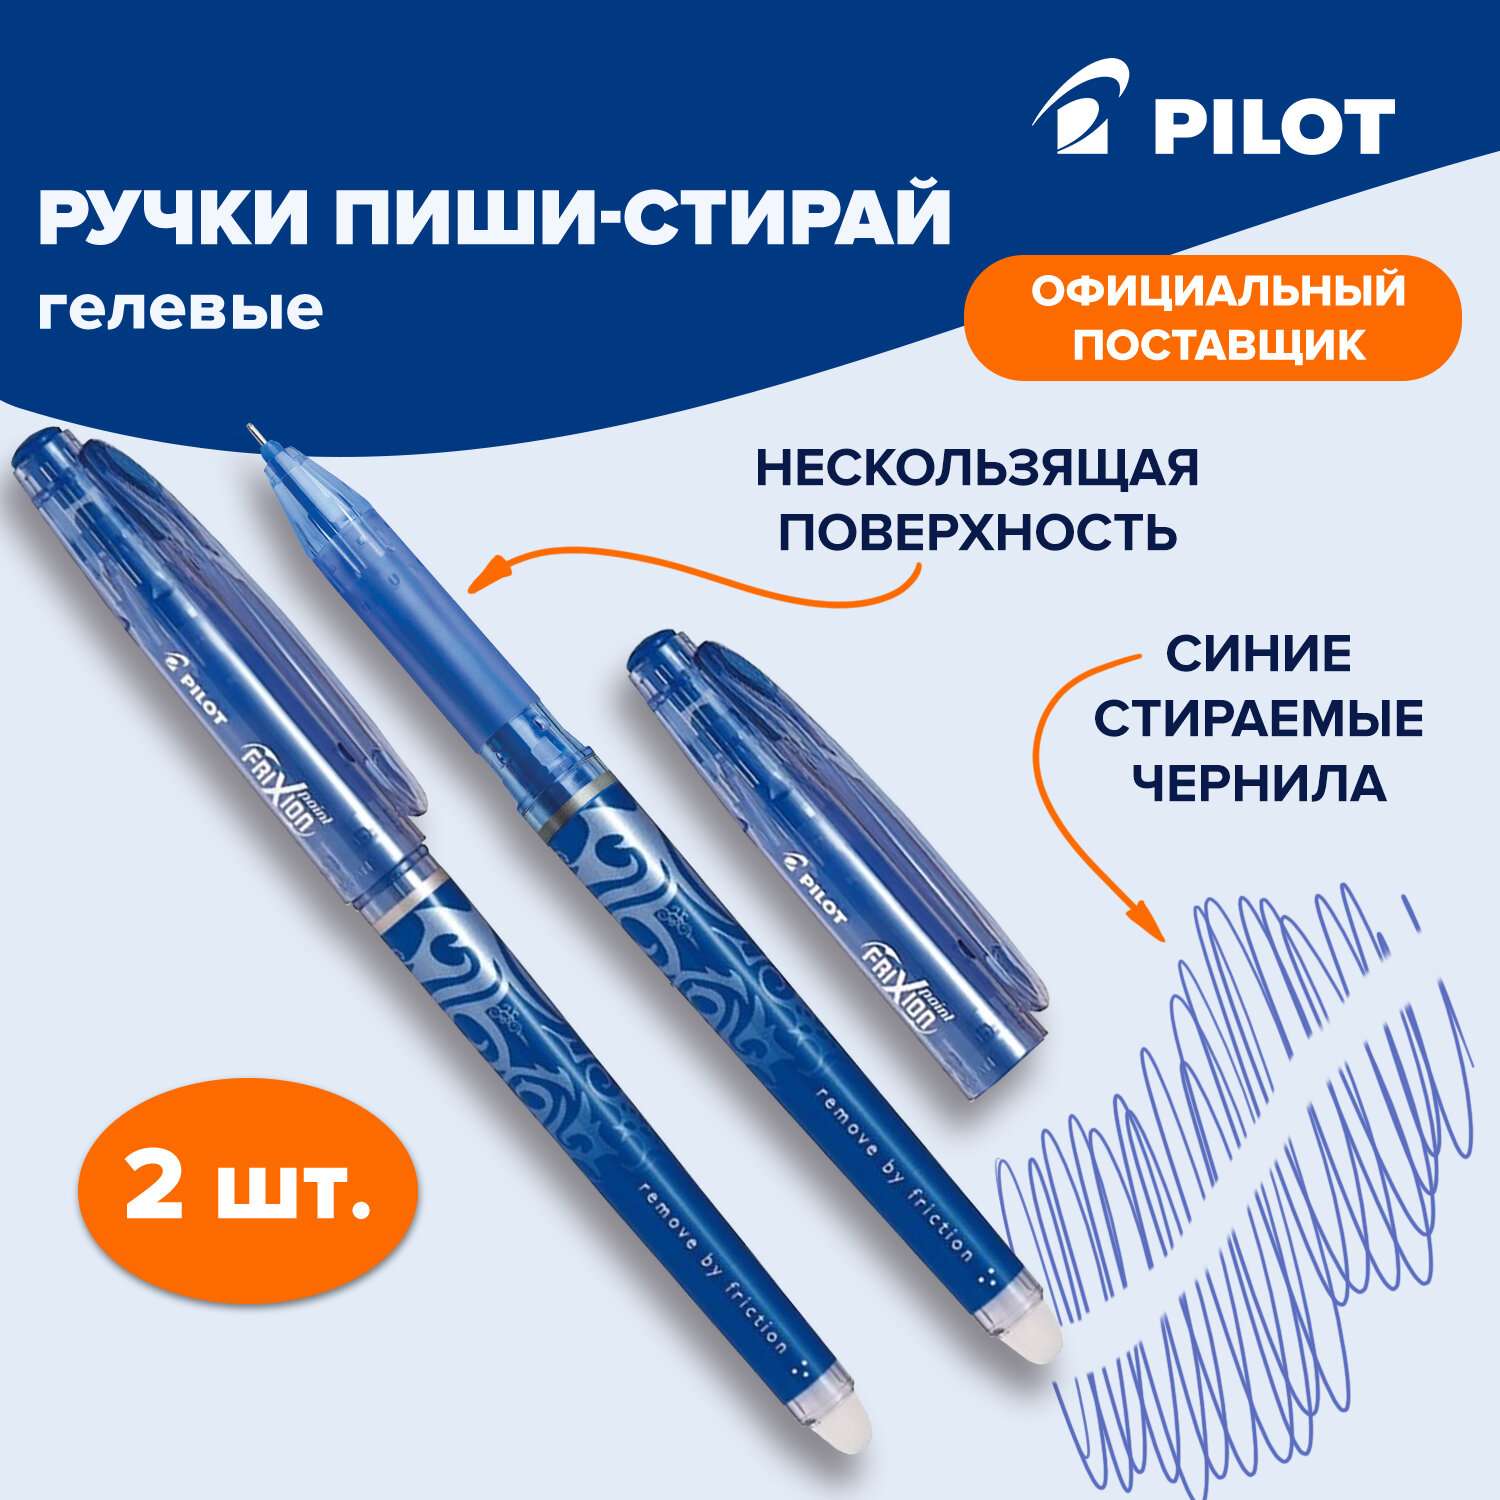 Ручки гелевые PILOT синие пиши стирай 2 штуки - фото 2